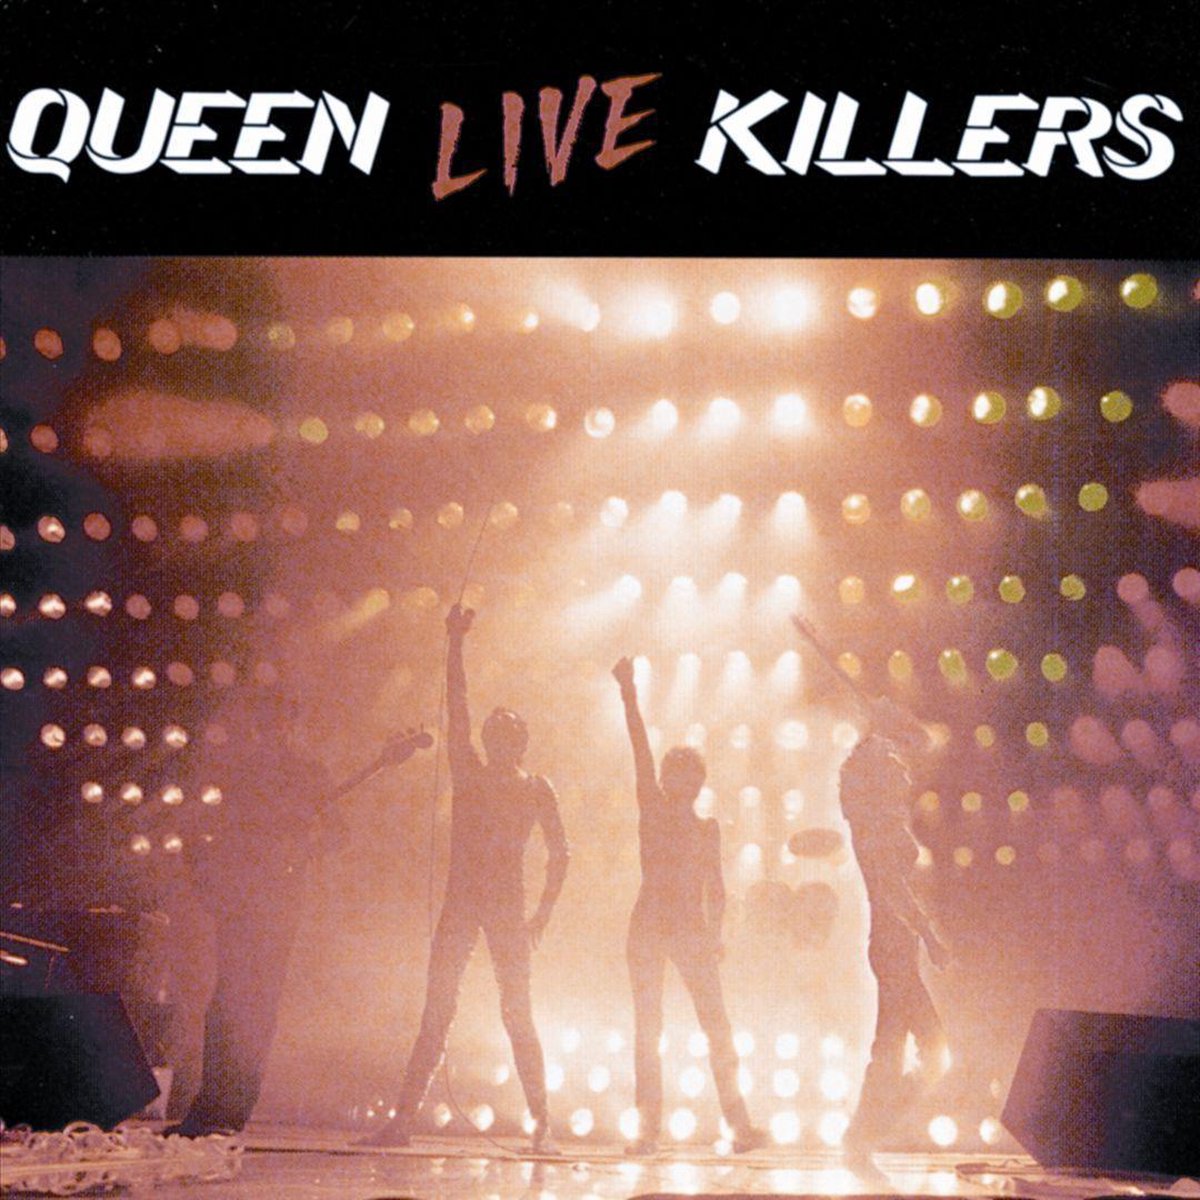 Live Killers - Queen